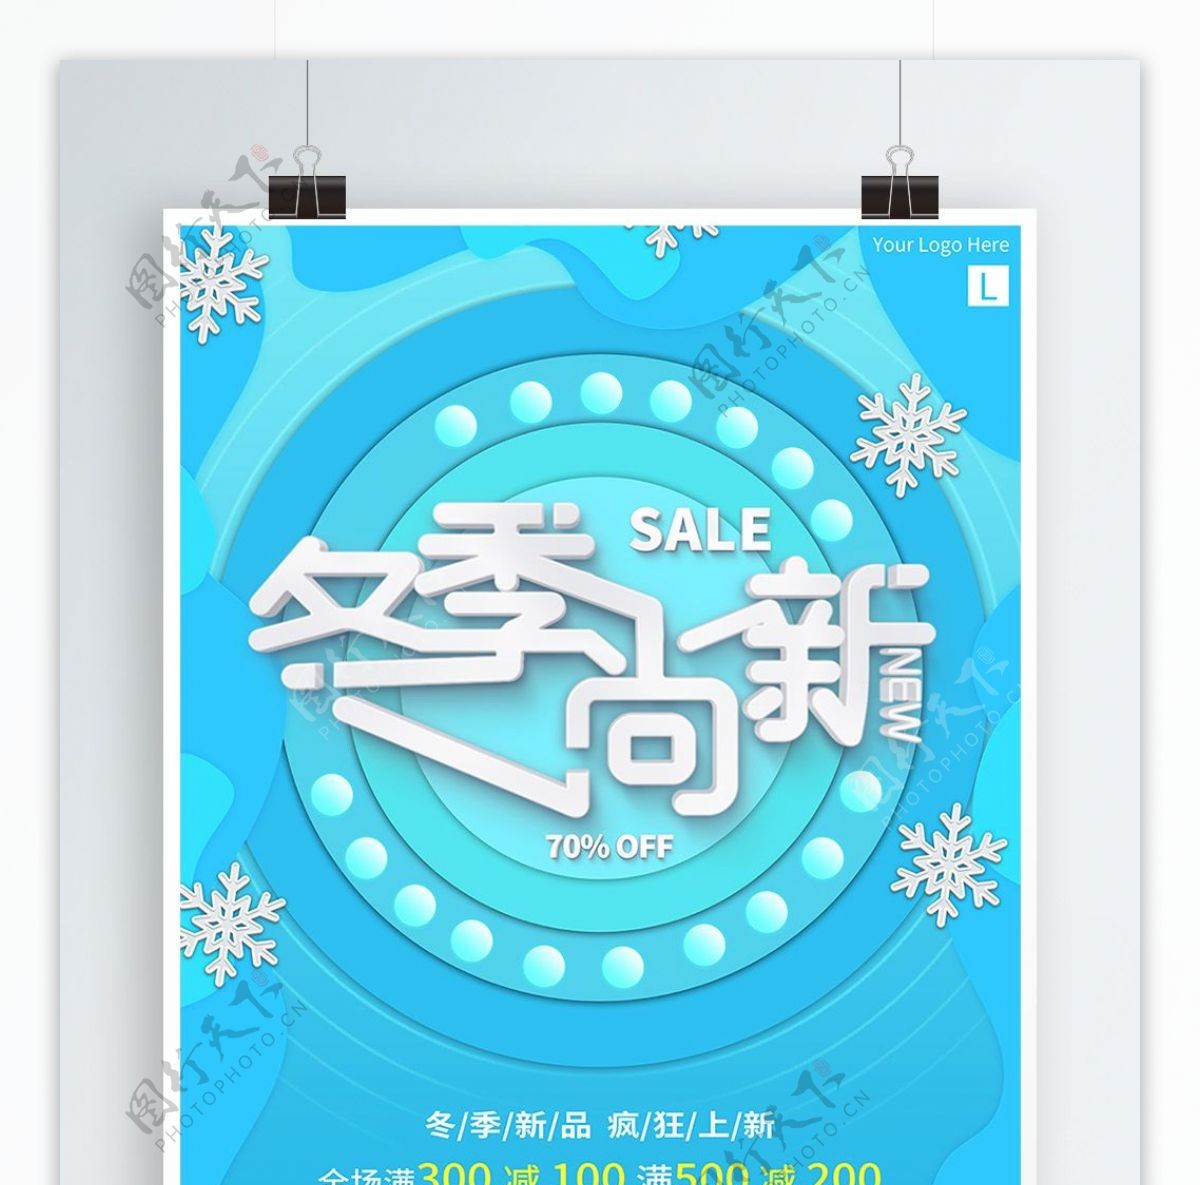 蓝色冬季尚新商业促销宣传海报